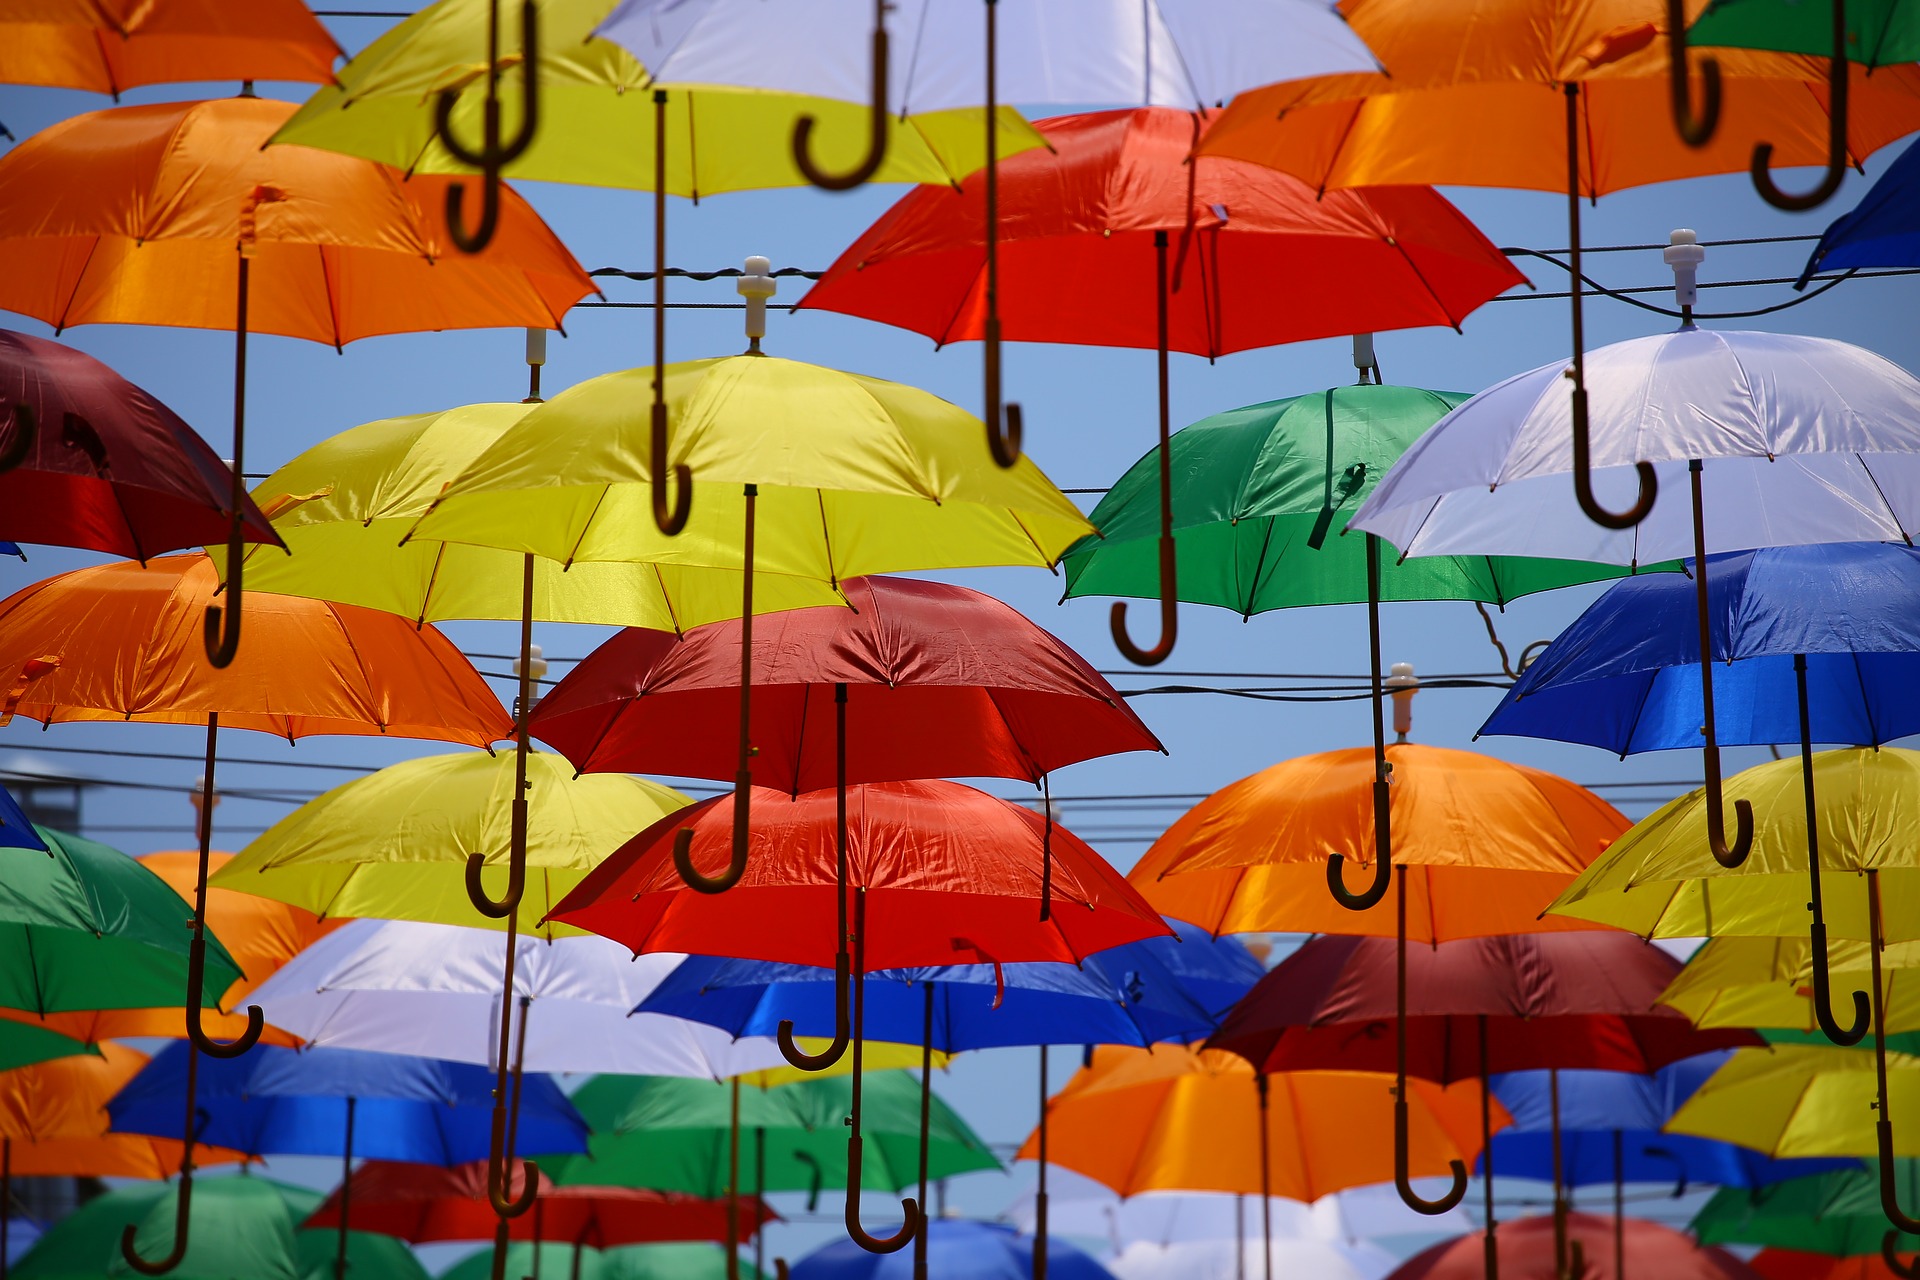 Insurance, umbrellas